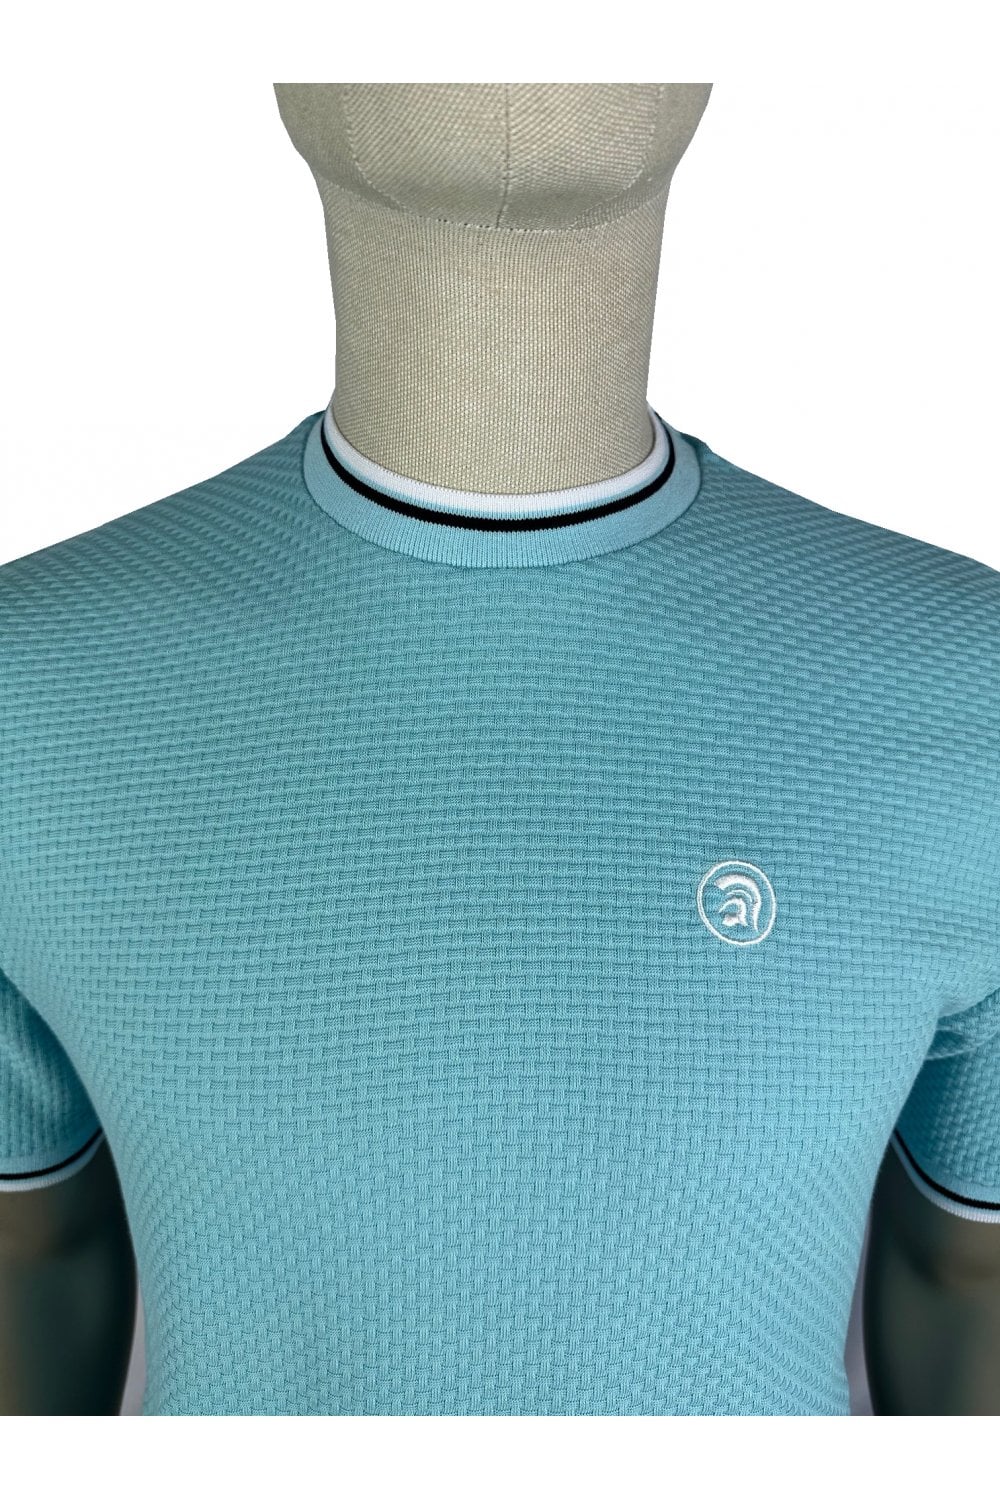 Trojan Records Men's TC1037 Twin Tipped Textured T Shirt Mint Green